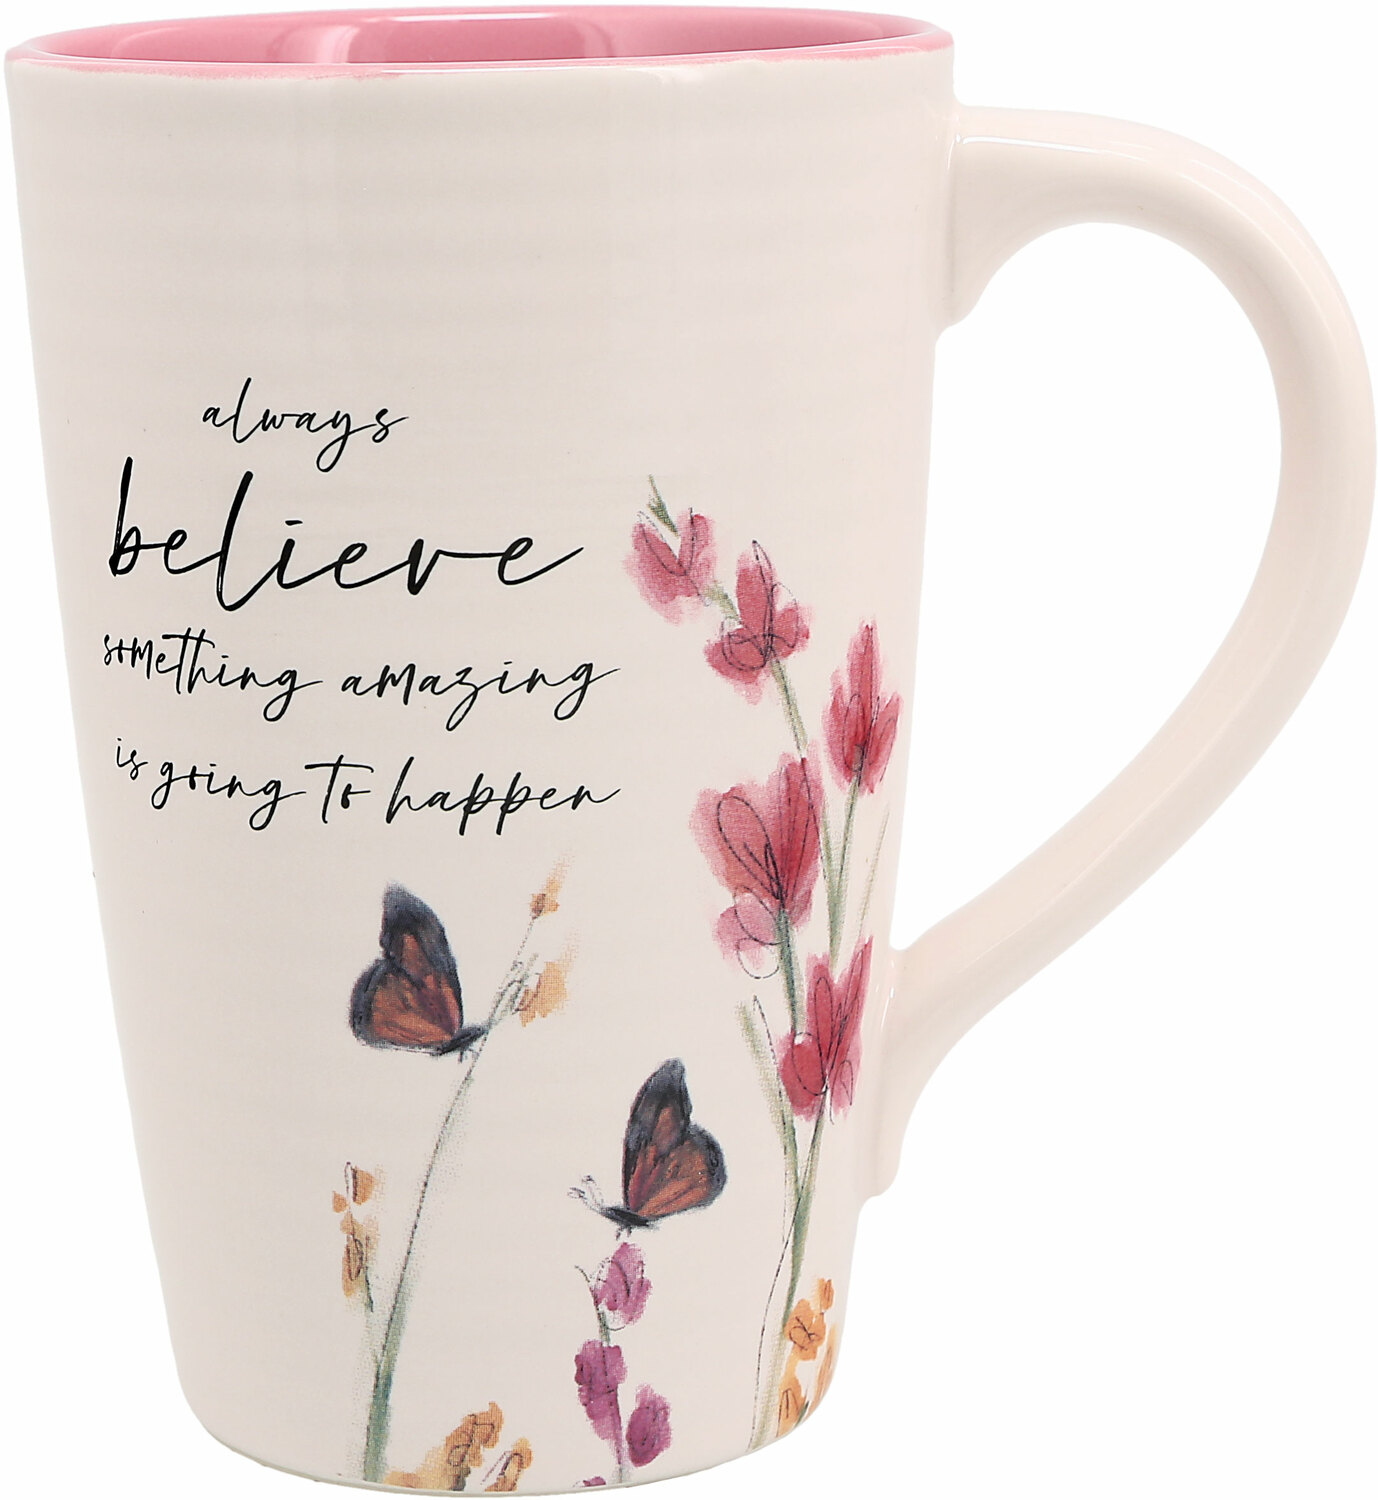 Believe by Meadows of Joy - Believe - 17 oz Cup